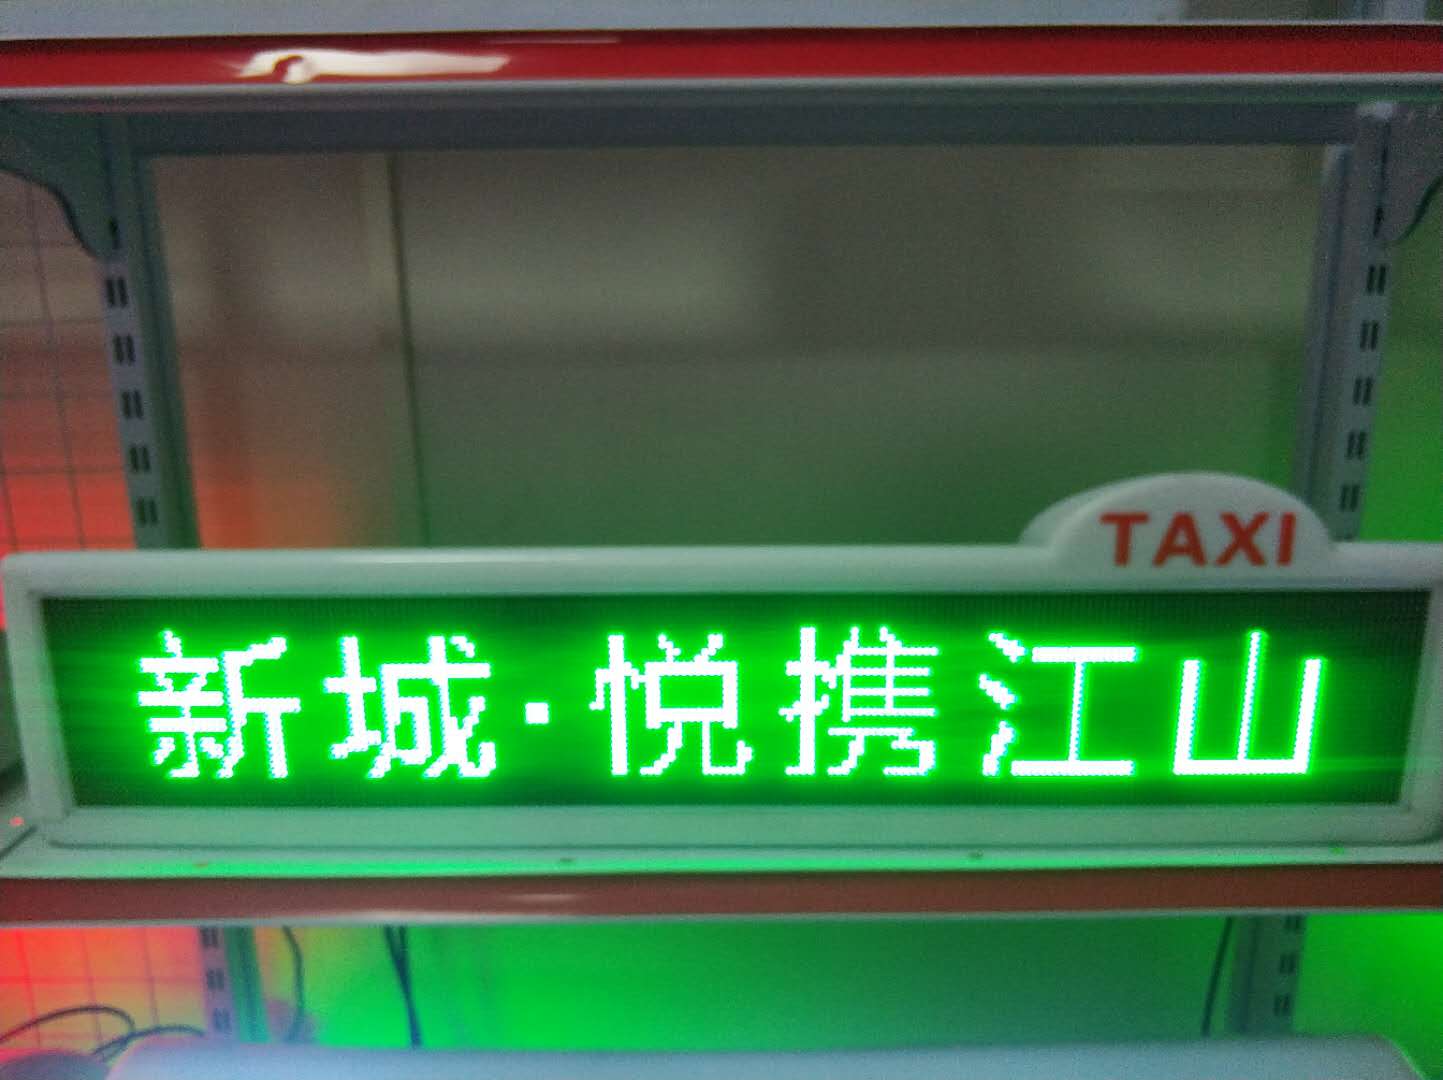 出租车顶灯厂家大全 LED广告屏图片 出租车顶灯联系方式